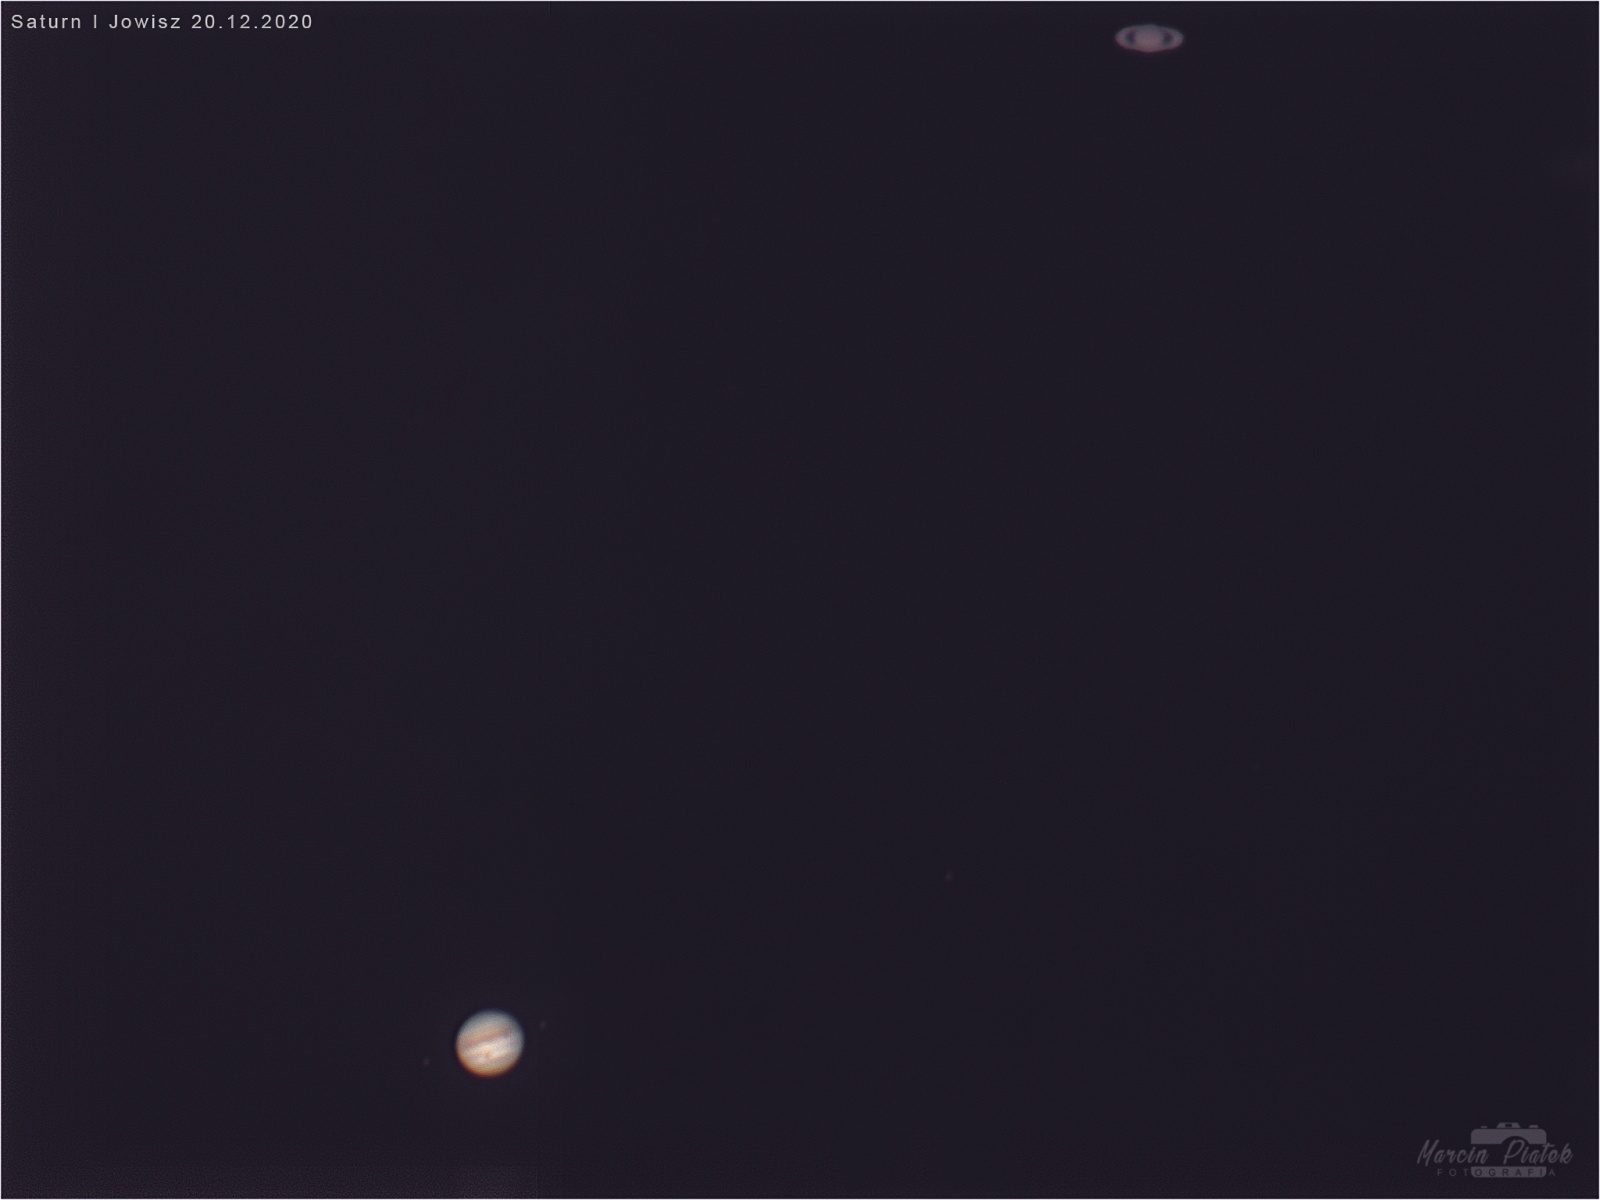 Jowiszi i Saturn 1-.jpg